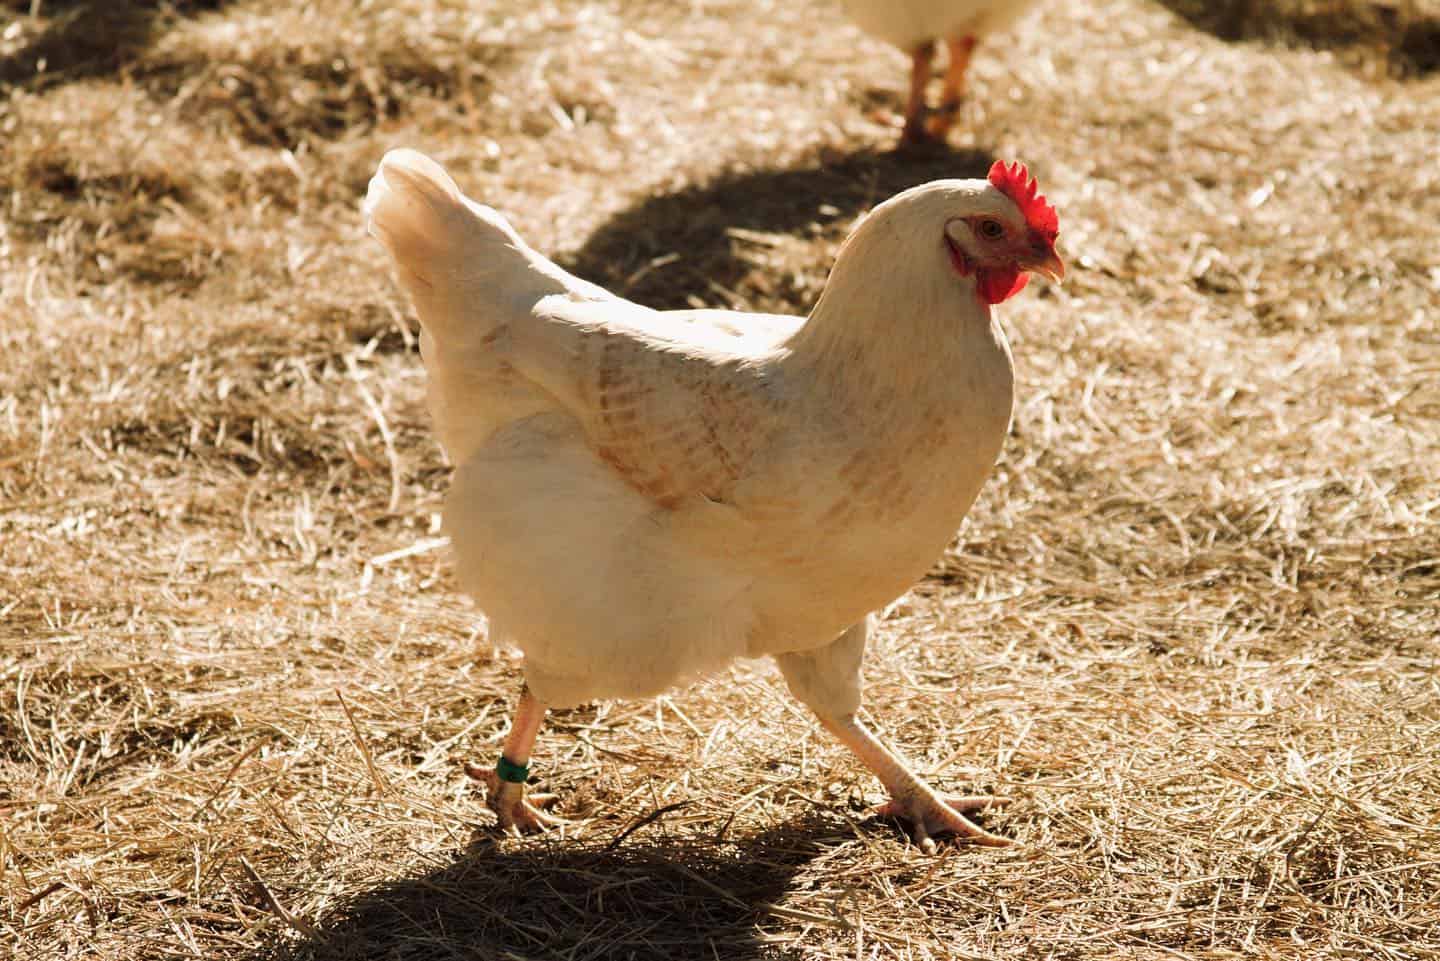 Amberlink chicken origins